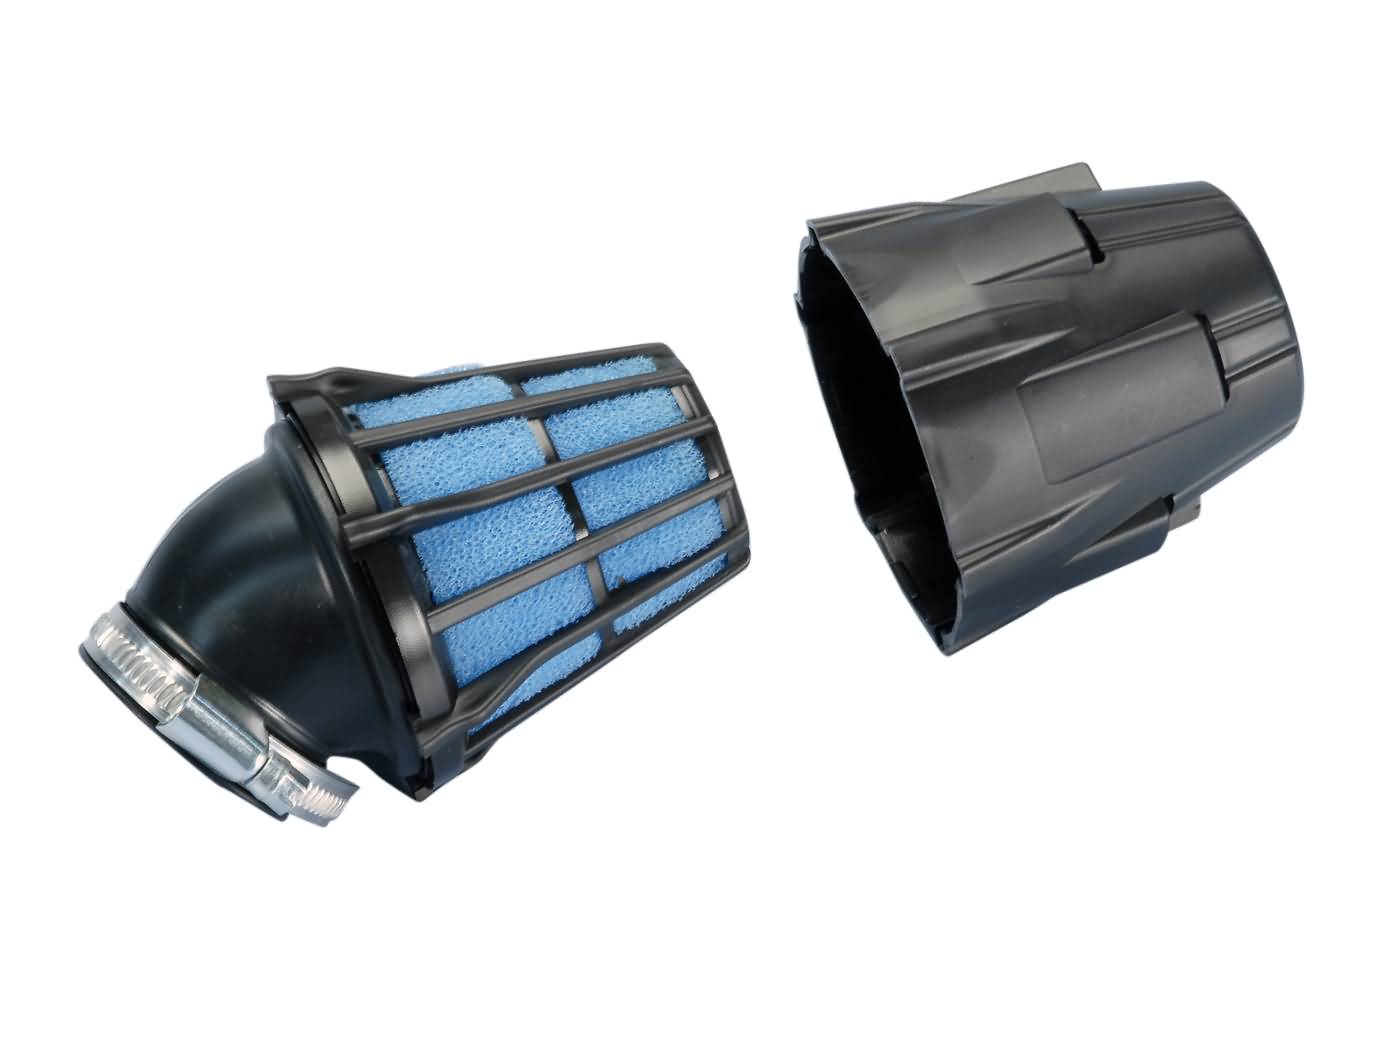 Vzduchový filtr Polini air box 37mm 30° černo-modrý 203.0091